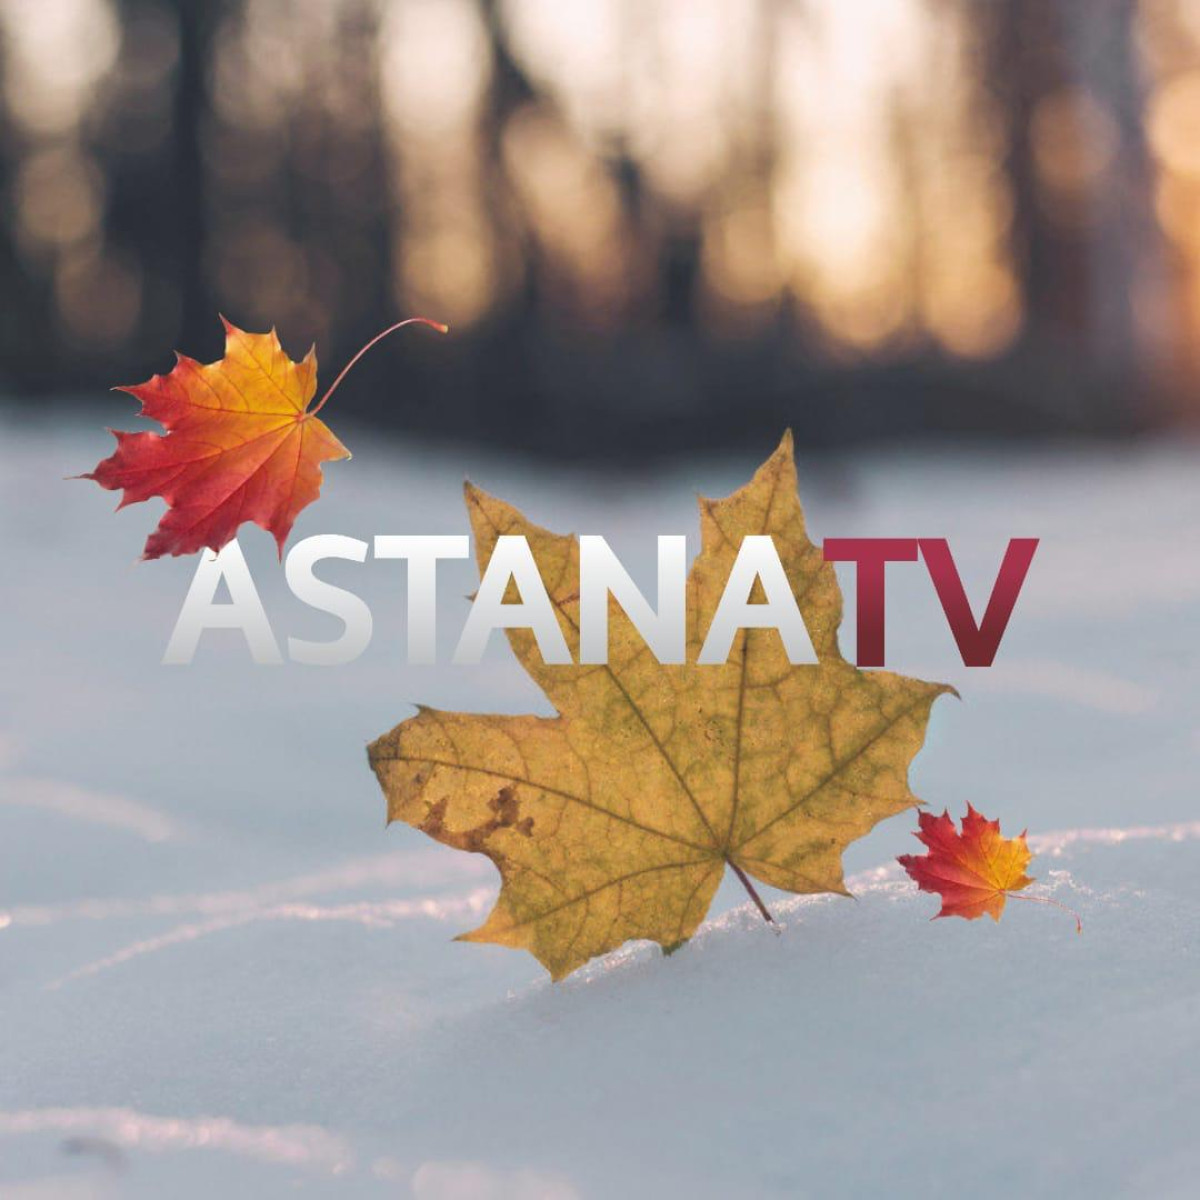  Телеканал "Астана" запустил новый формат вещания